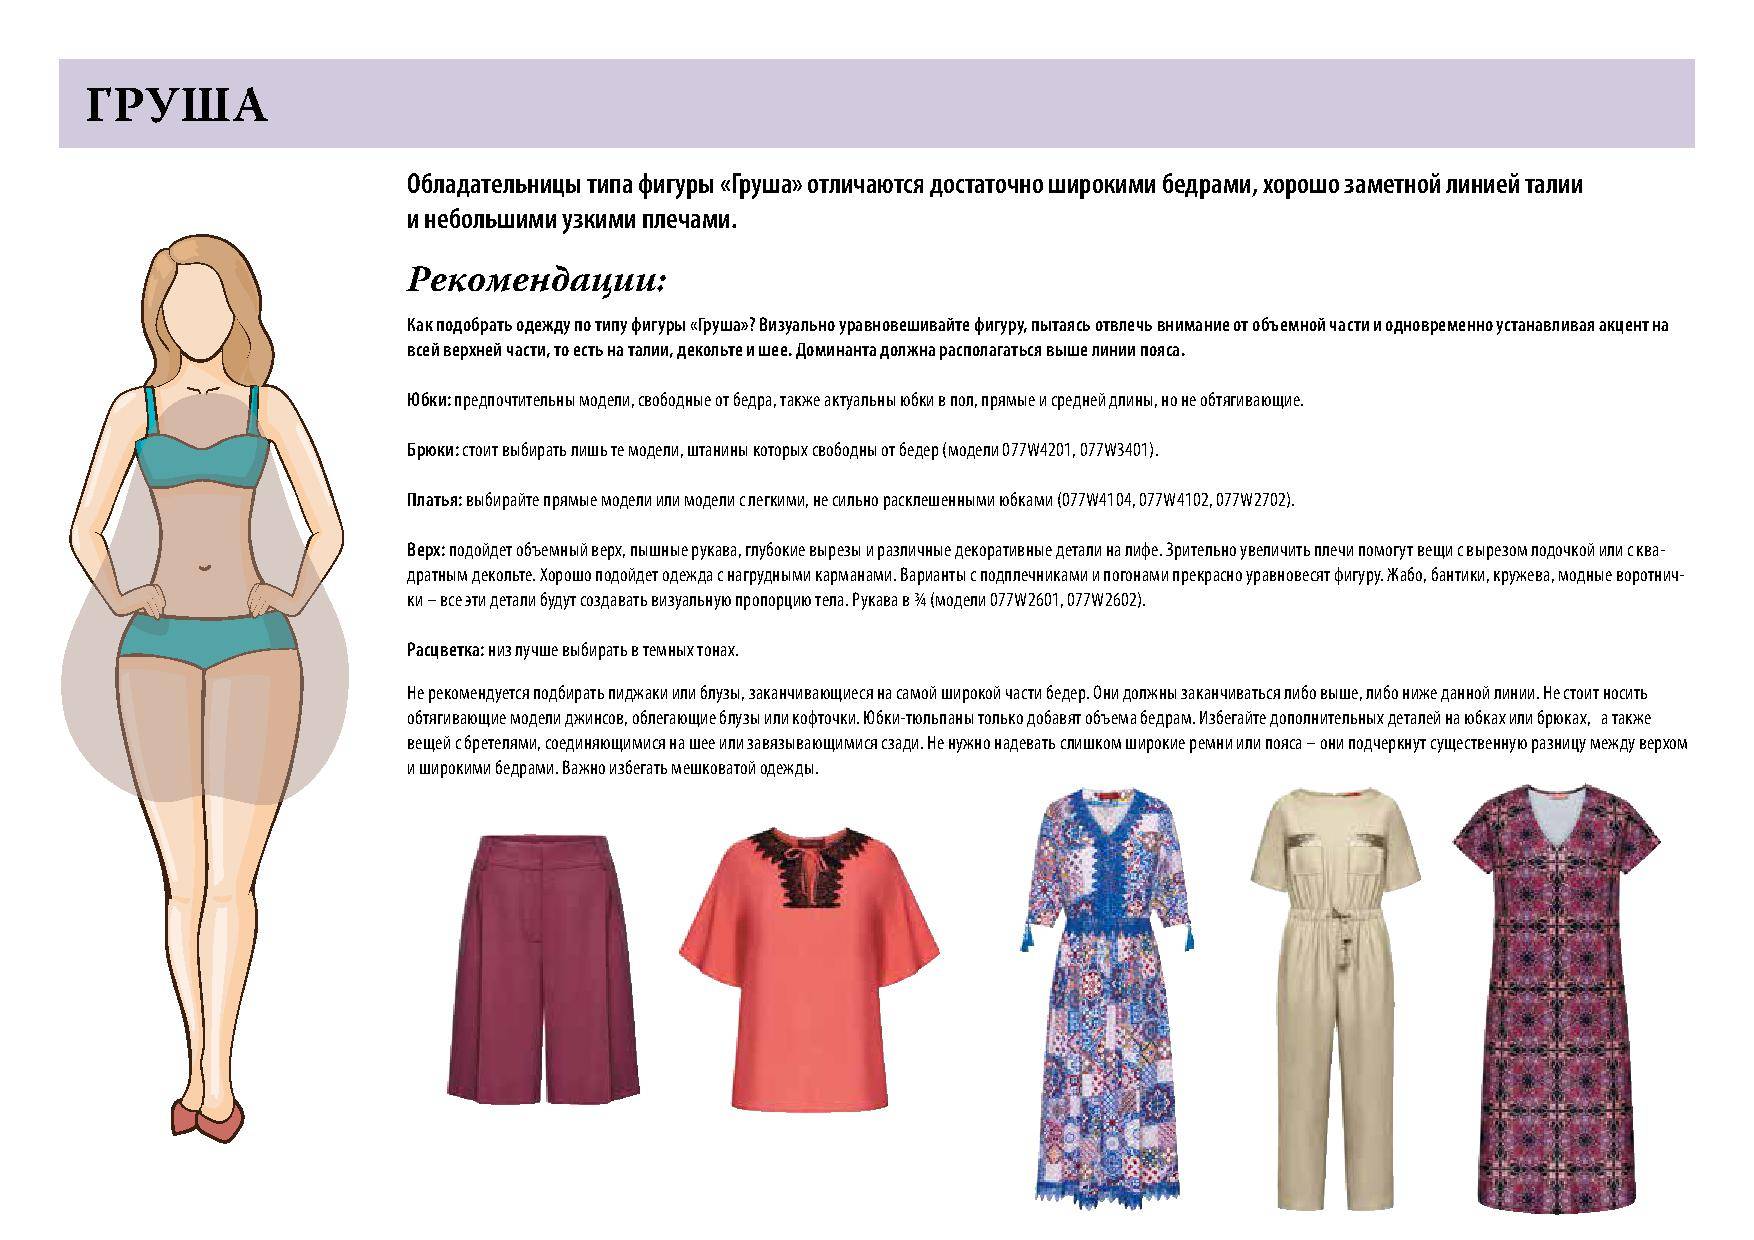 Как выбрать цвет одежды: советы стилистов
как правильно выбрать свой цвет одежды — модная дама